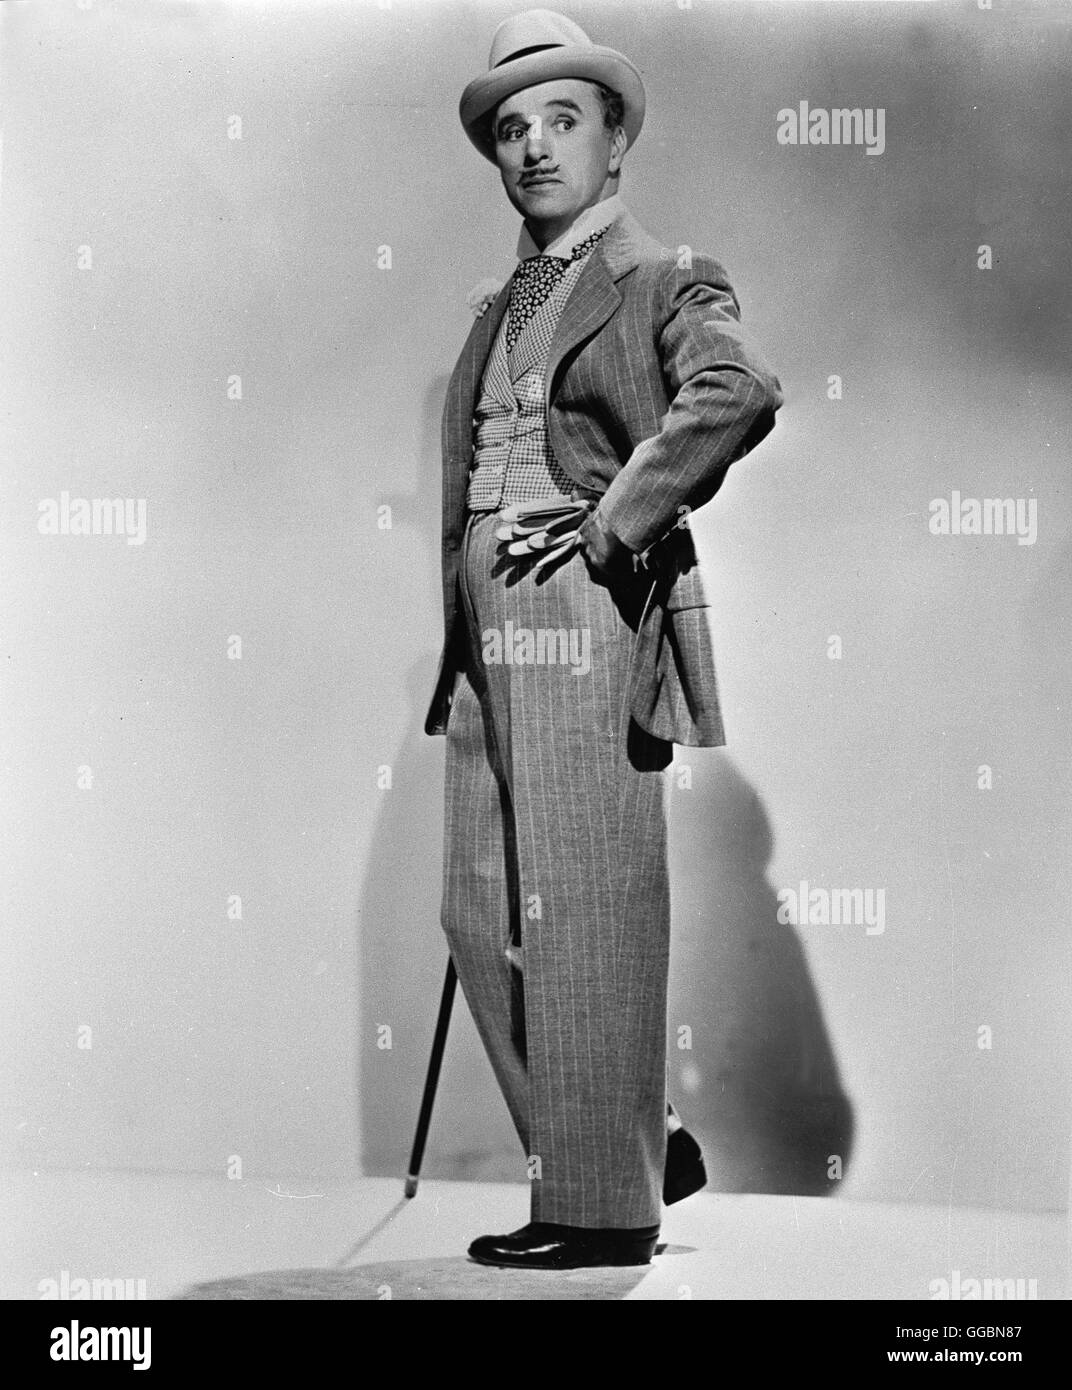 MONSIEUR VERDOUX - DER FRAUENMÖRDER VON PARIS / Monsieur Verdoux USA 1947 / Charles Chaplin CHARLES CHAPLIN als Monsieur Verdoux Regie: Charles Chaplin aka. Monsieur Verdoux Stock Photo